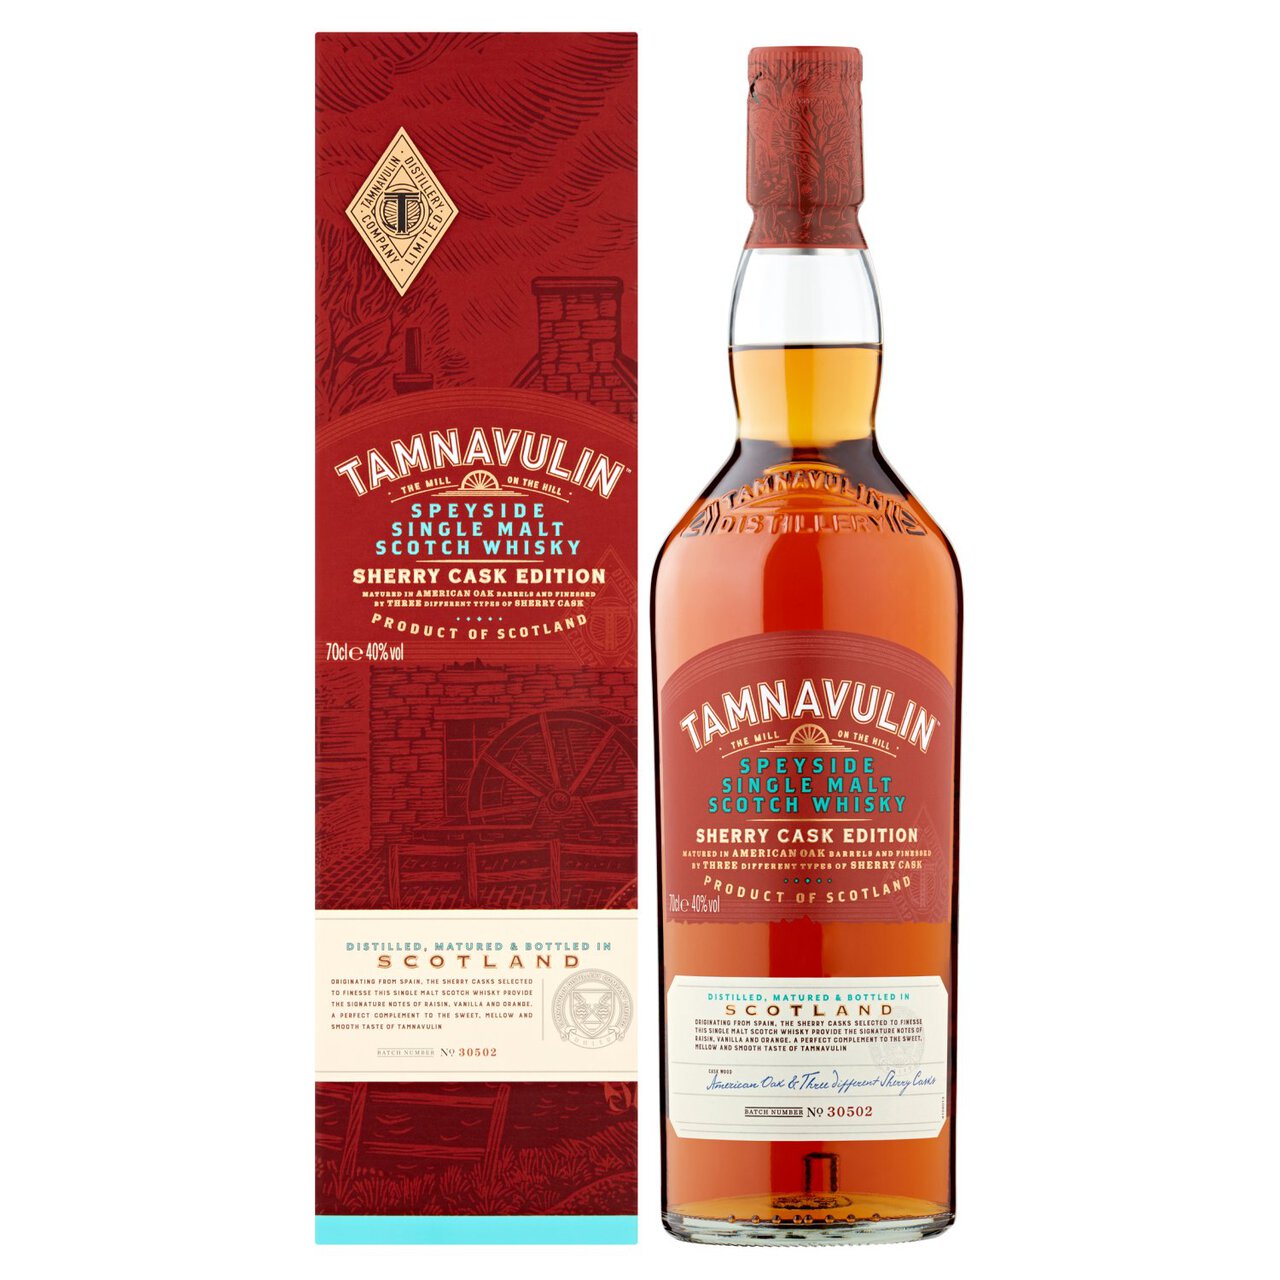 Tamnavulin Sherry Cask Edition, Speyside Single Malt Scotch Whisky 70cl